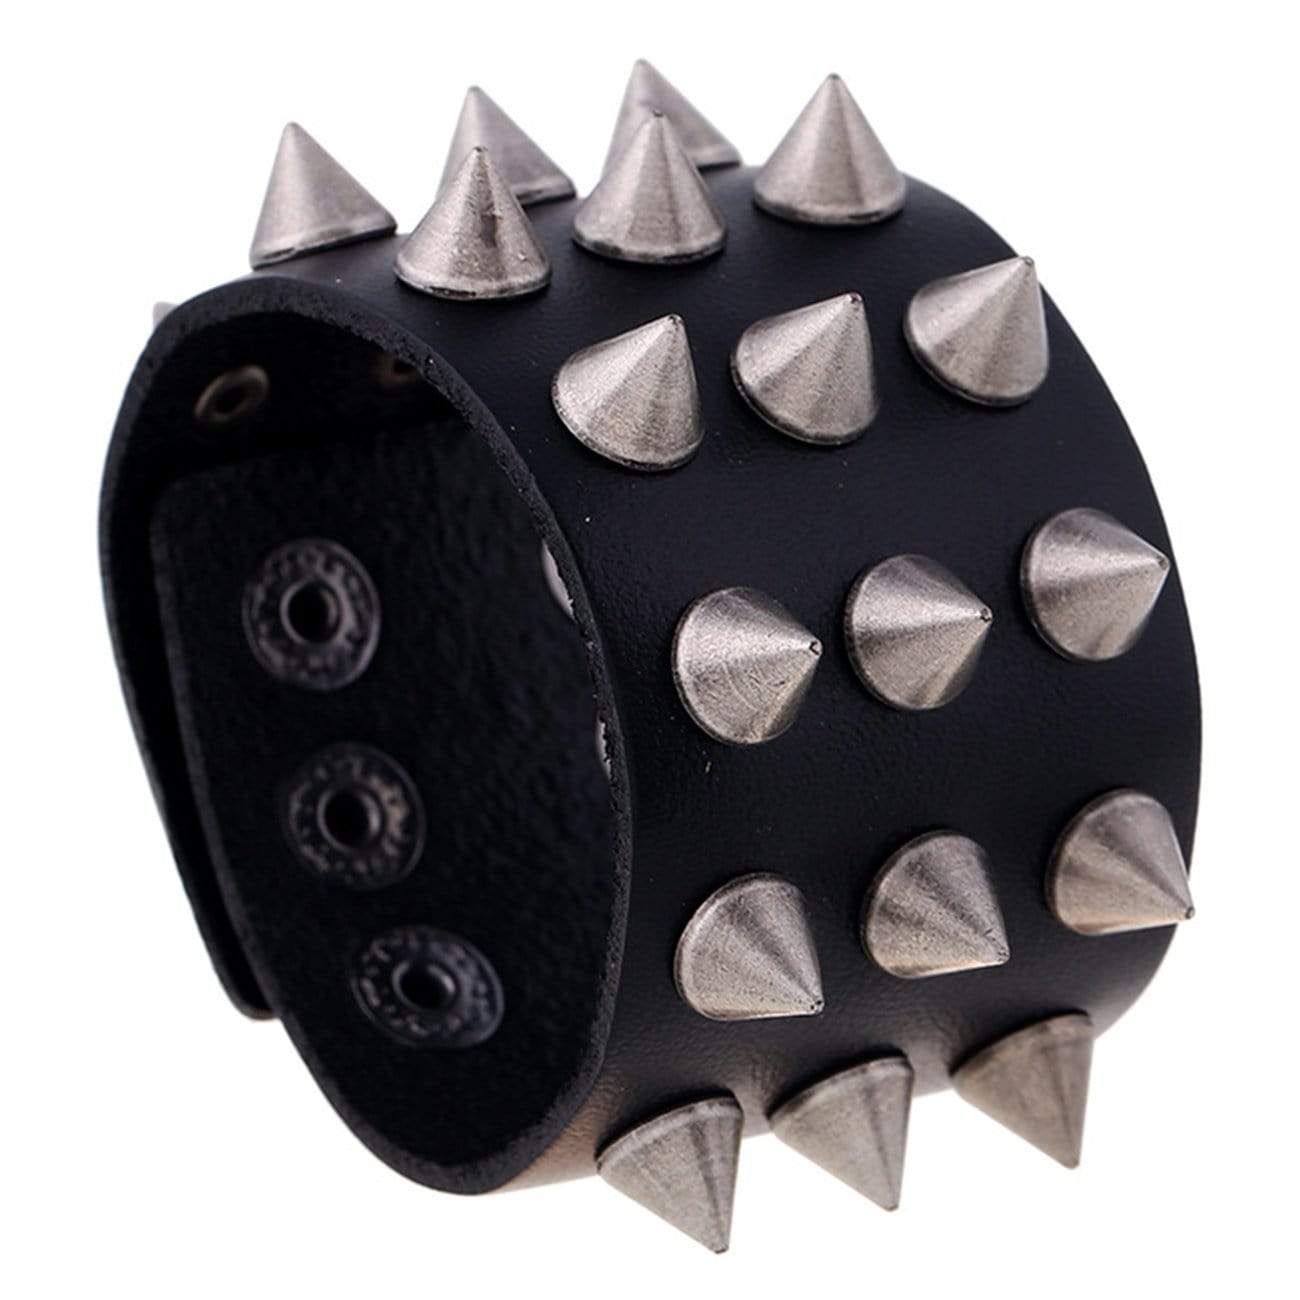 TO Punk Leather Rivet Adjustable Bracelet